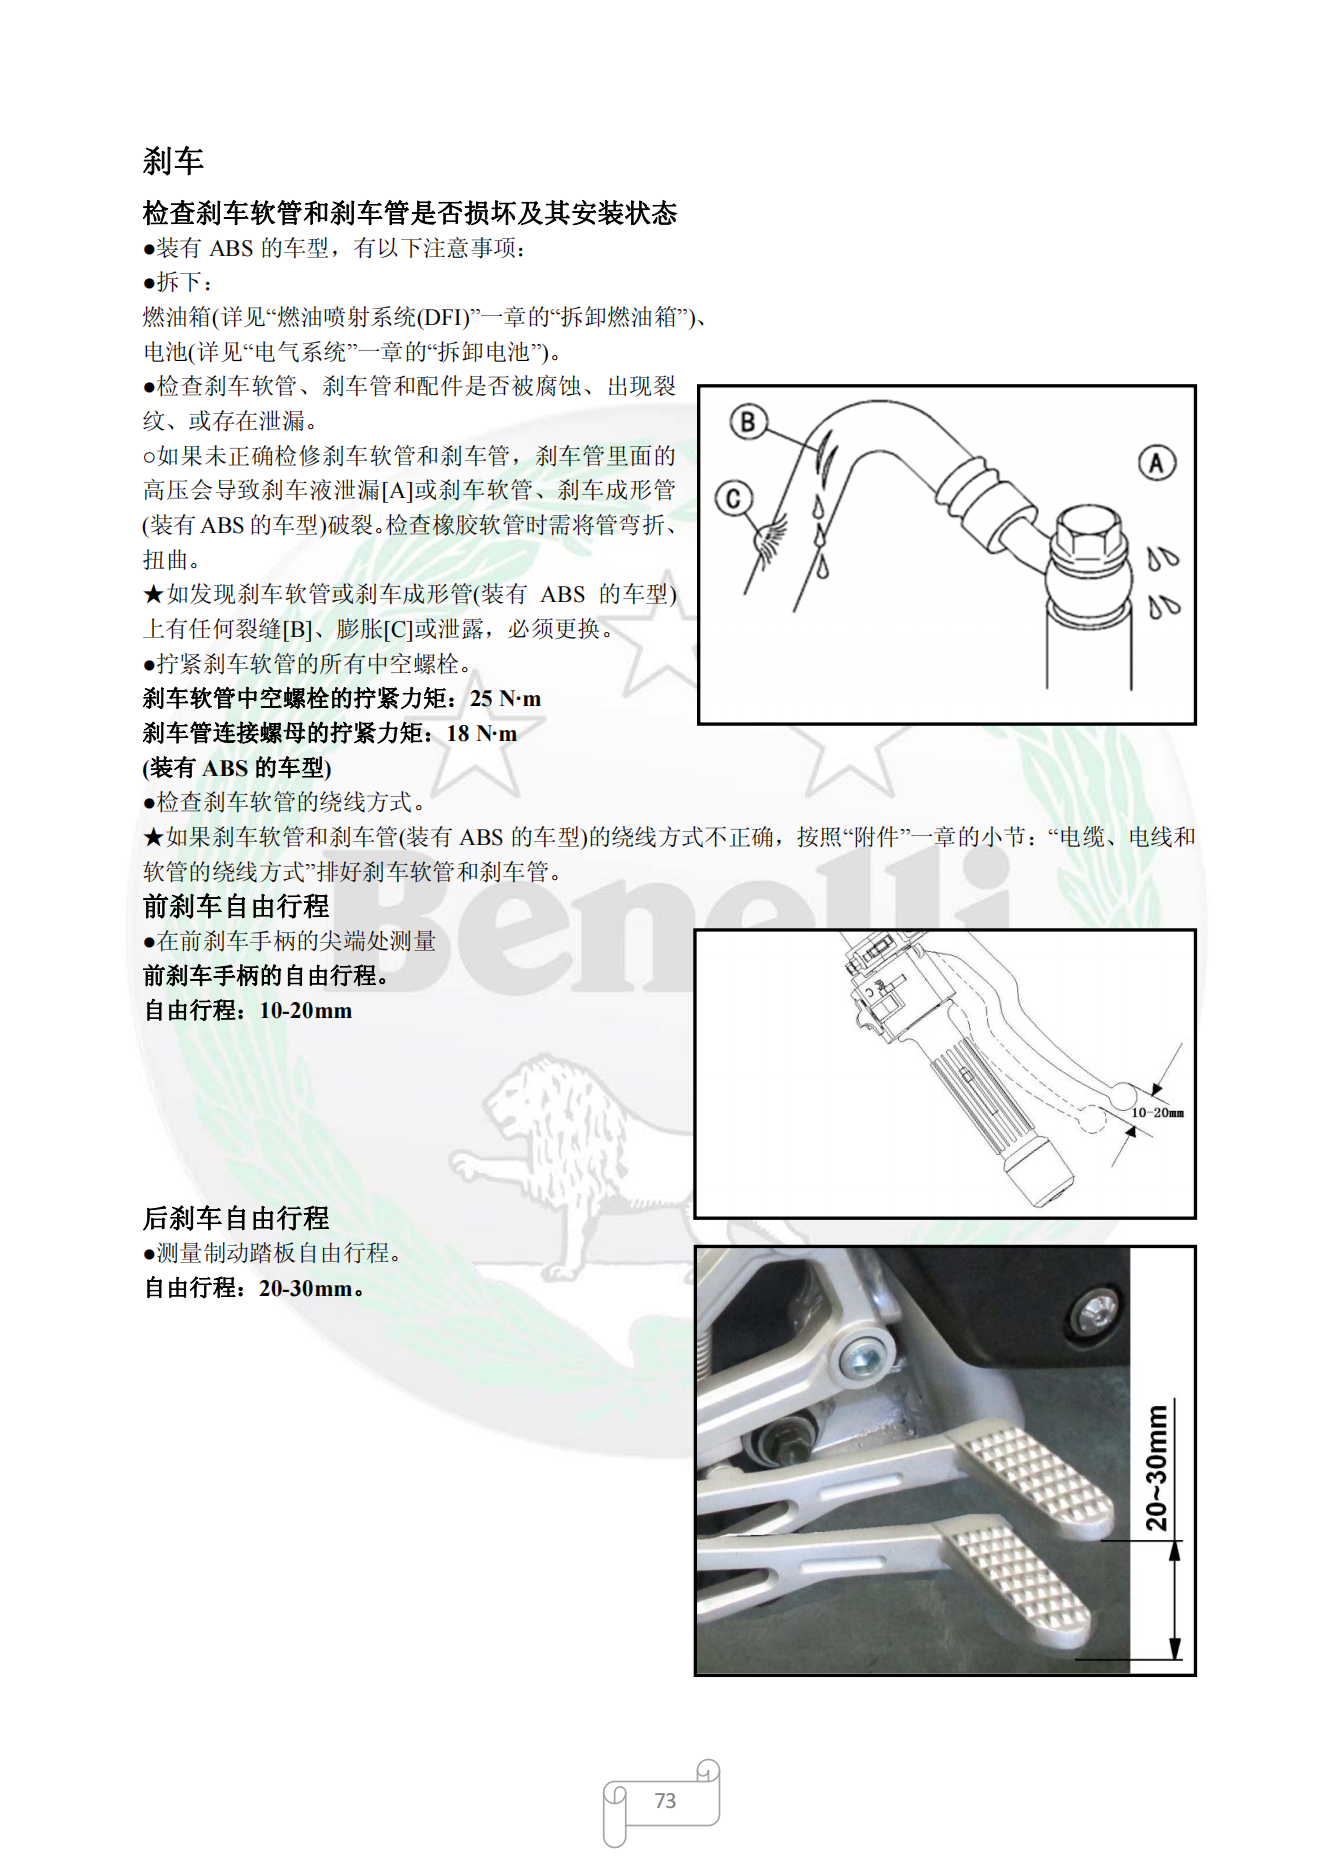 原版中文贝纳利BJ250-15 小黄龙TNT250维修手册插图3